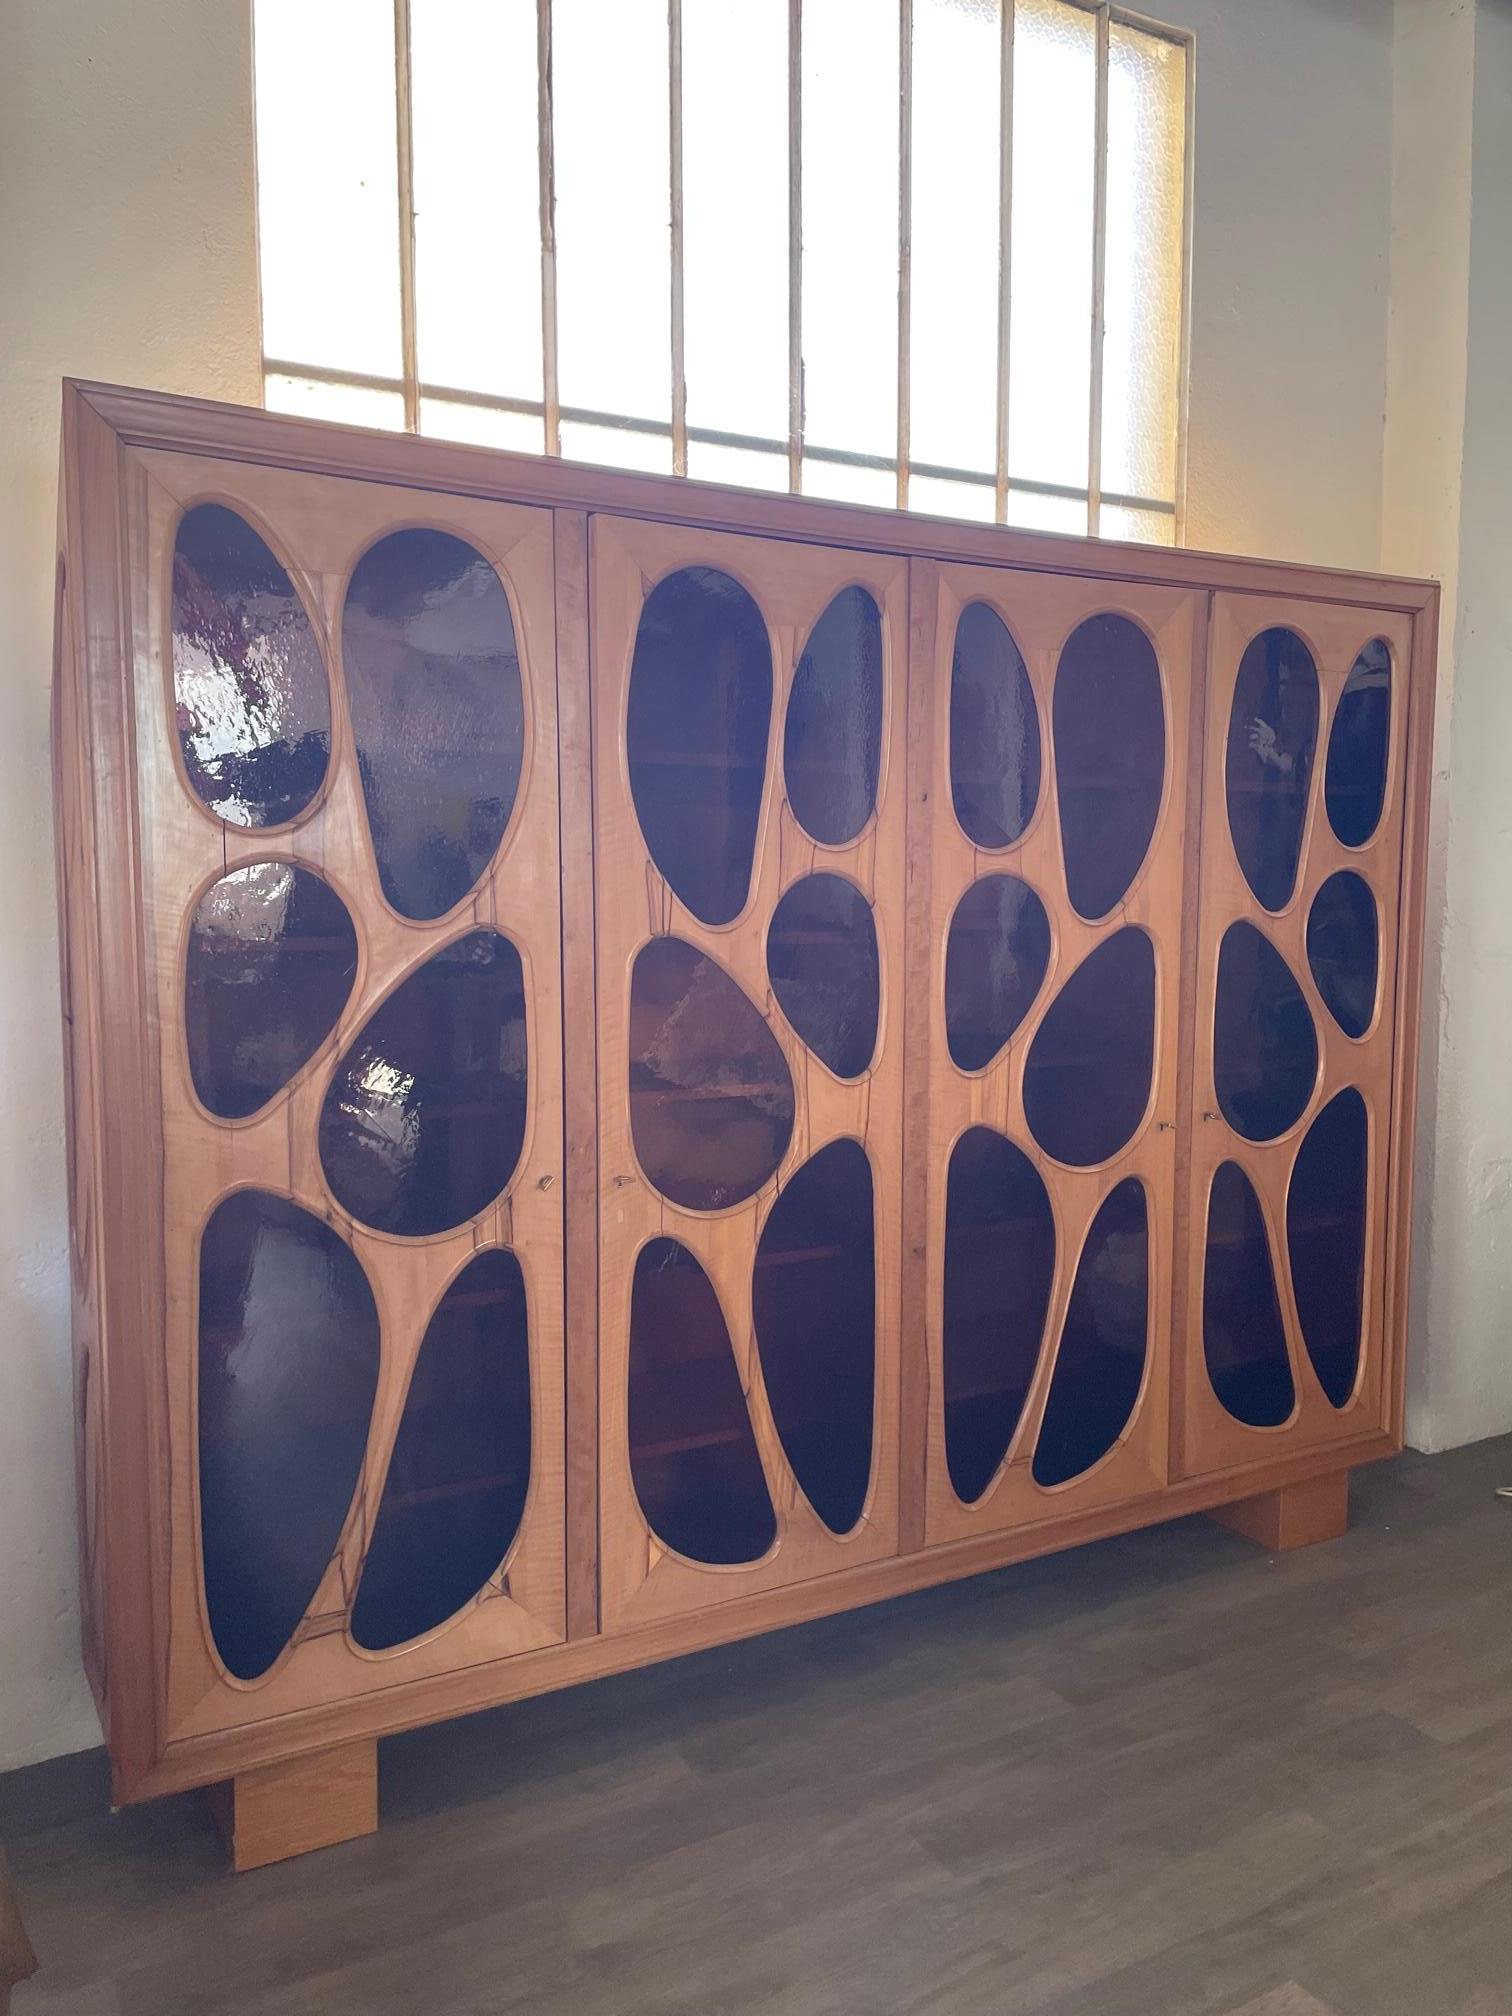 Exceptionnelle bibliothèque/vitrine en bois de fruitier réalisée en un seul exemplaire par Vincent Gonzalez avec portes vitrées de forme originale. La forme de cette vitrine est rare, elle a été fabriquée sur mesure pour s'adapter à un emplacement